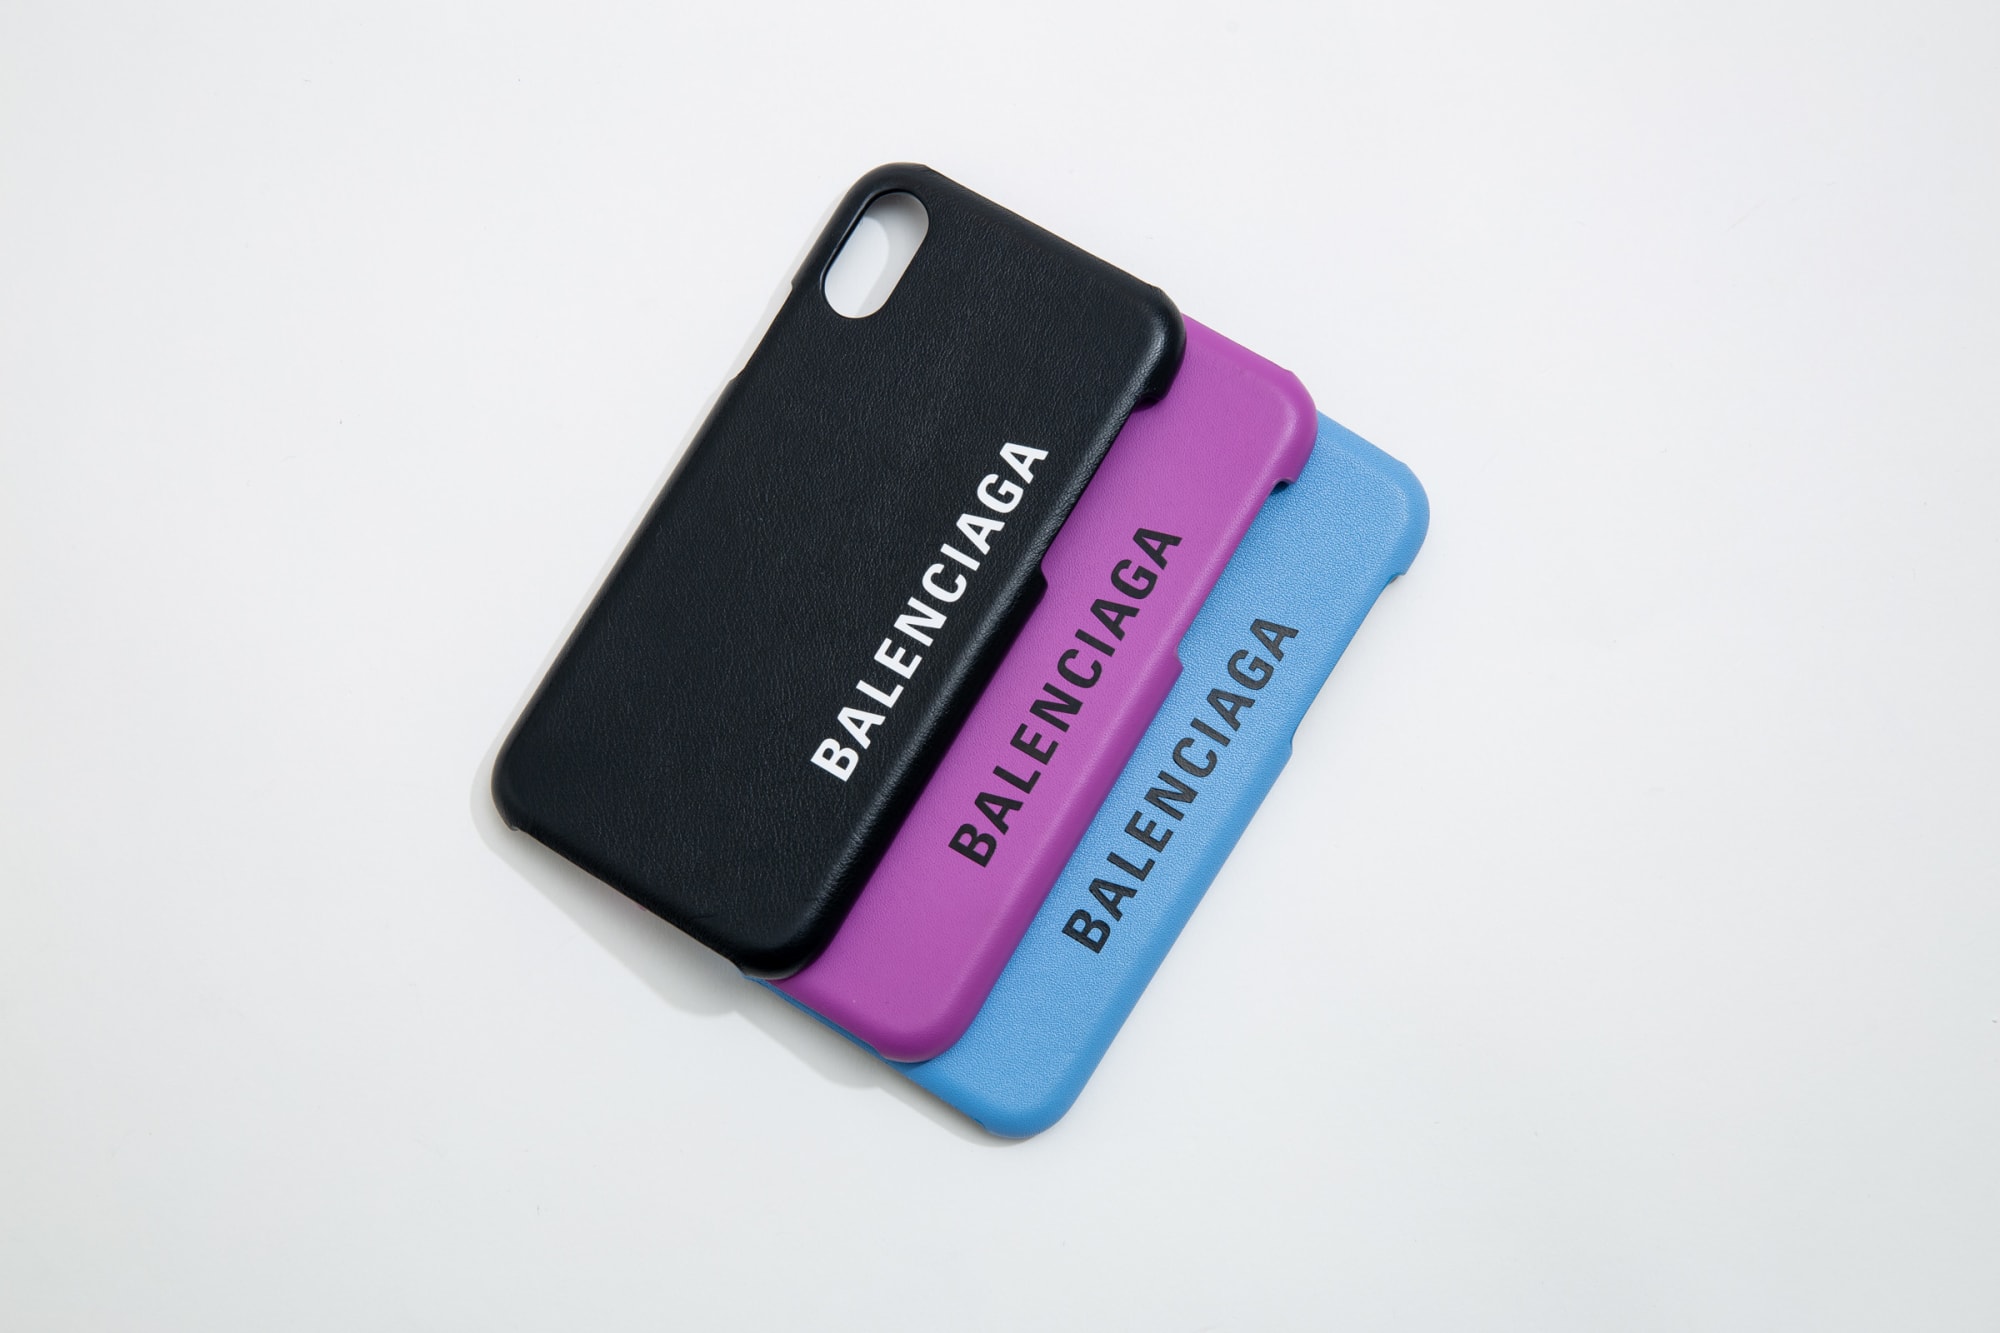 バレンシアガ」からiPhoneケースが初登場、ブランドロゴをデザイン